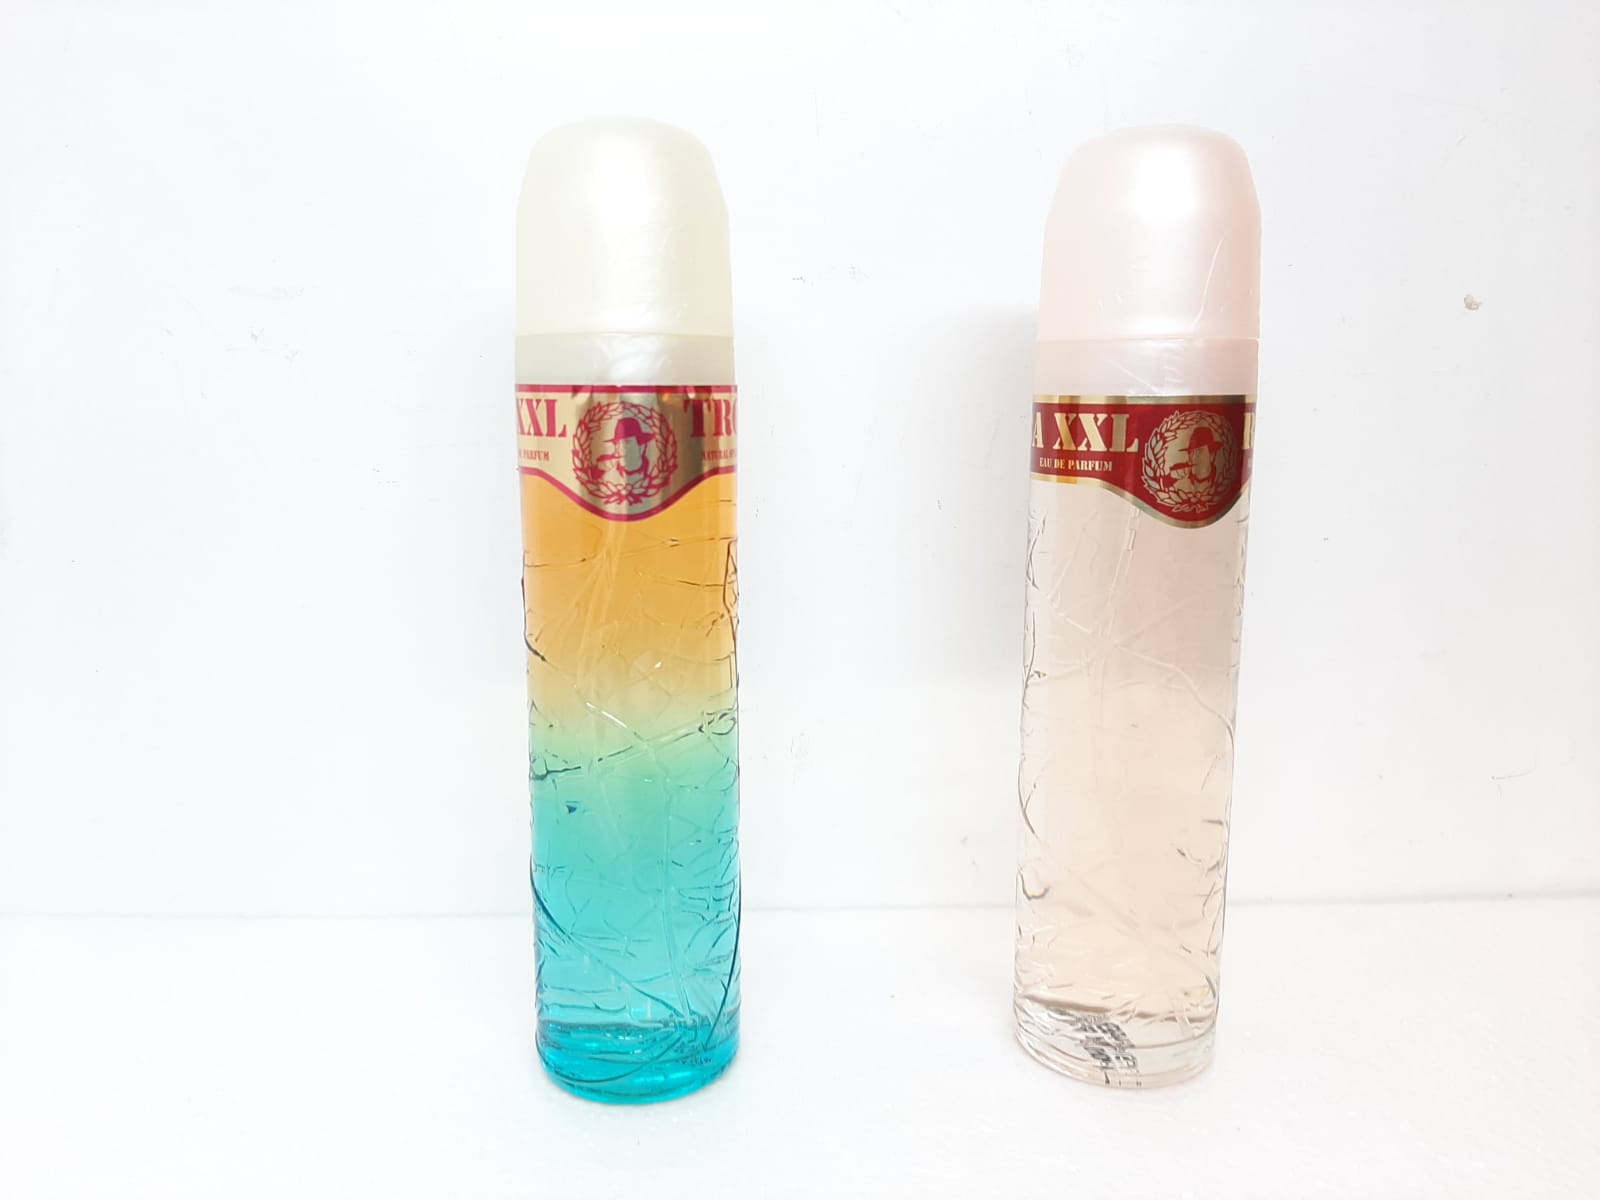 Parfym Diamond Parfums XXL (130 ml)